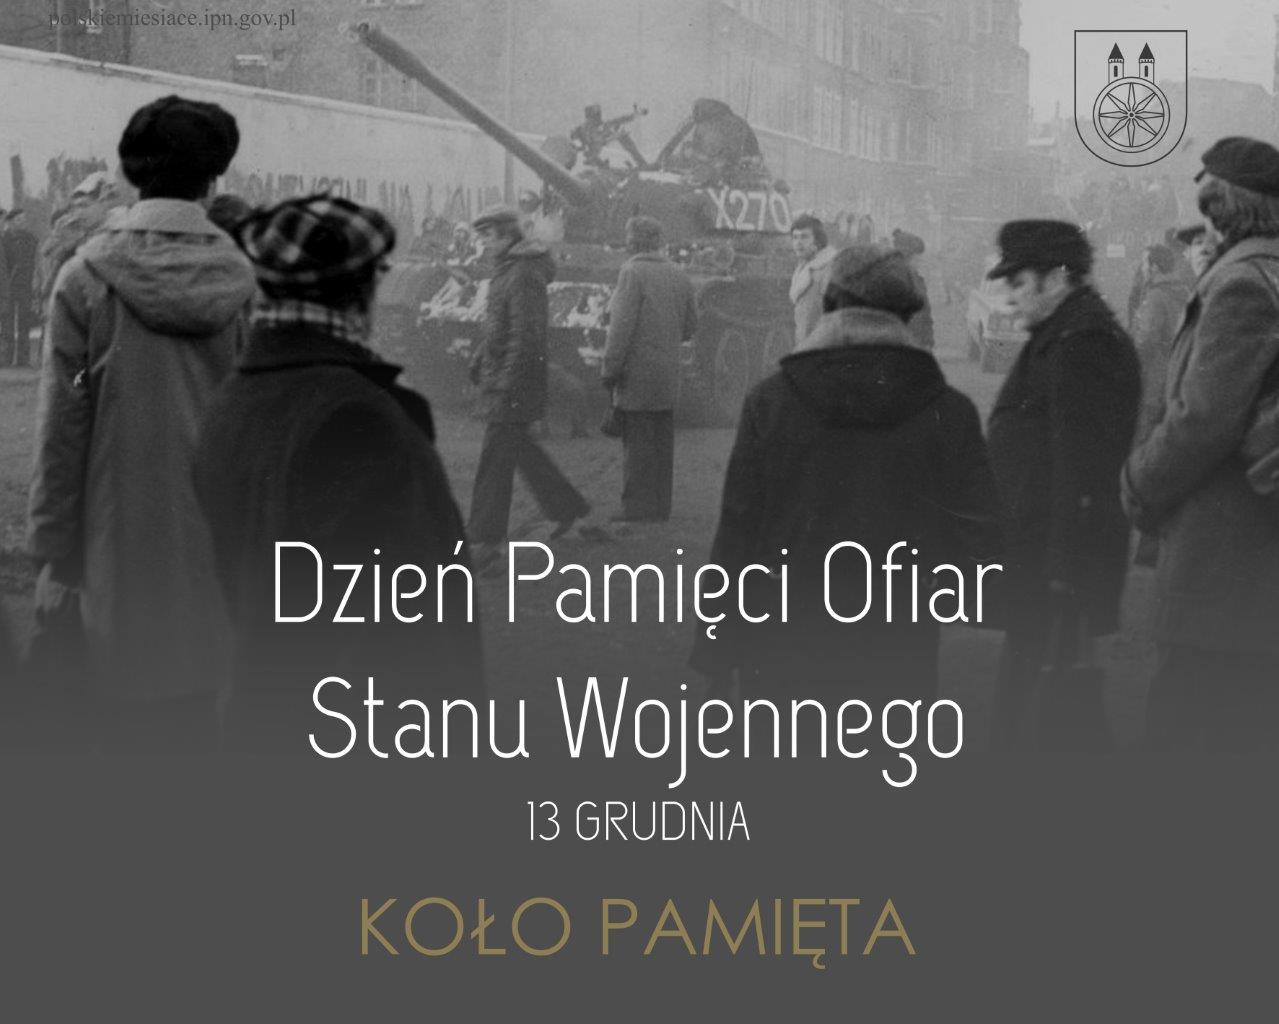 Plansza 13 grudnia Dzień Pamięci Ofiar Stanu Wojennego, tekst pod planszą